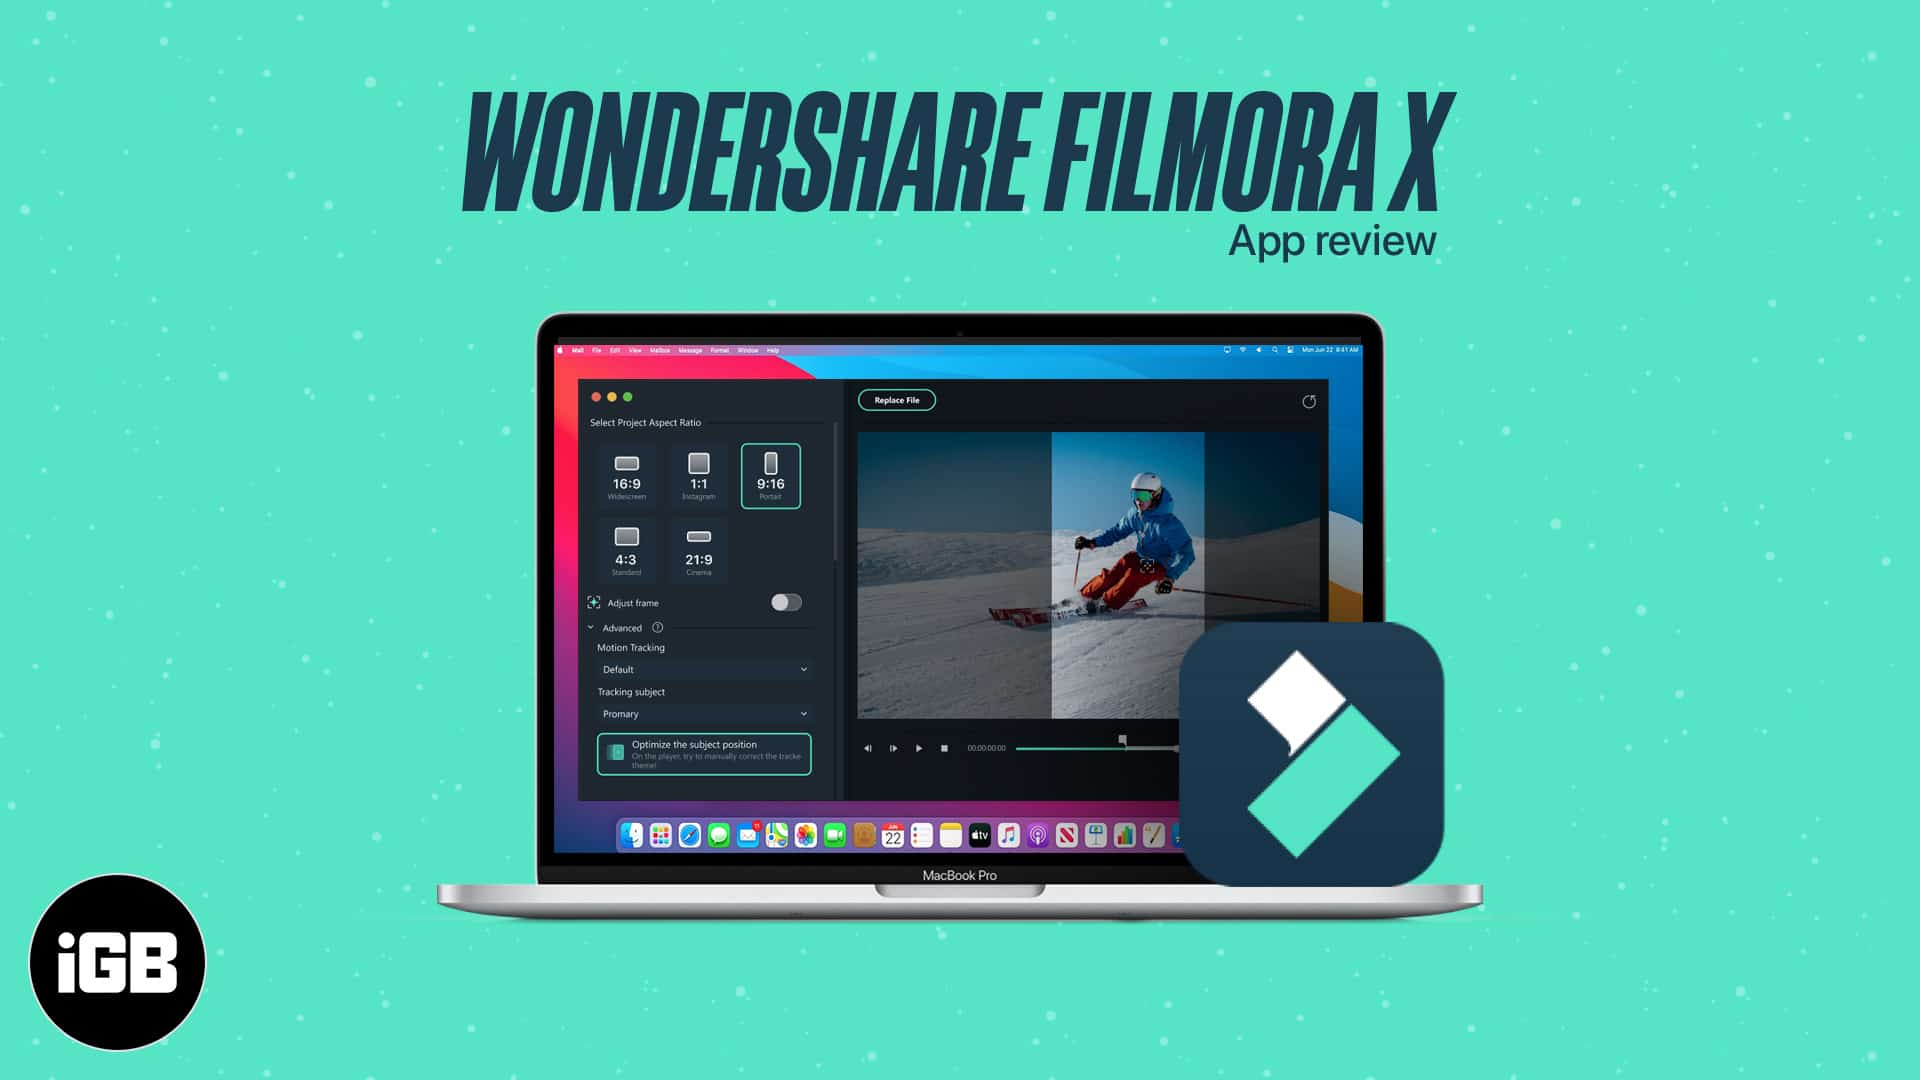 wondershare filmora review 2018 for mac